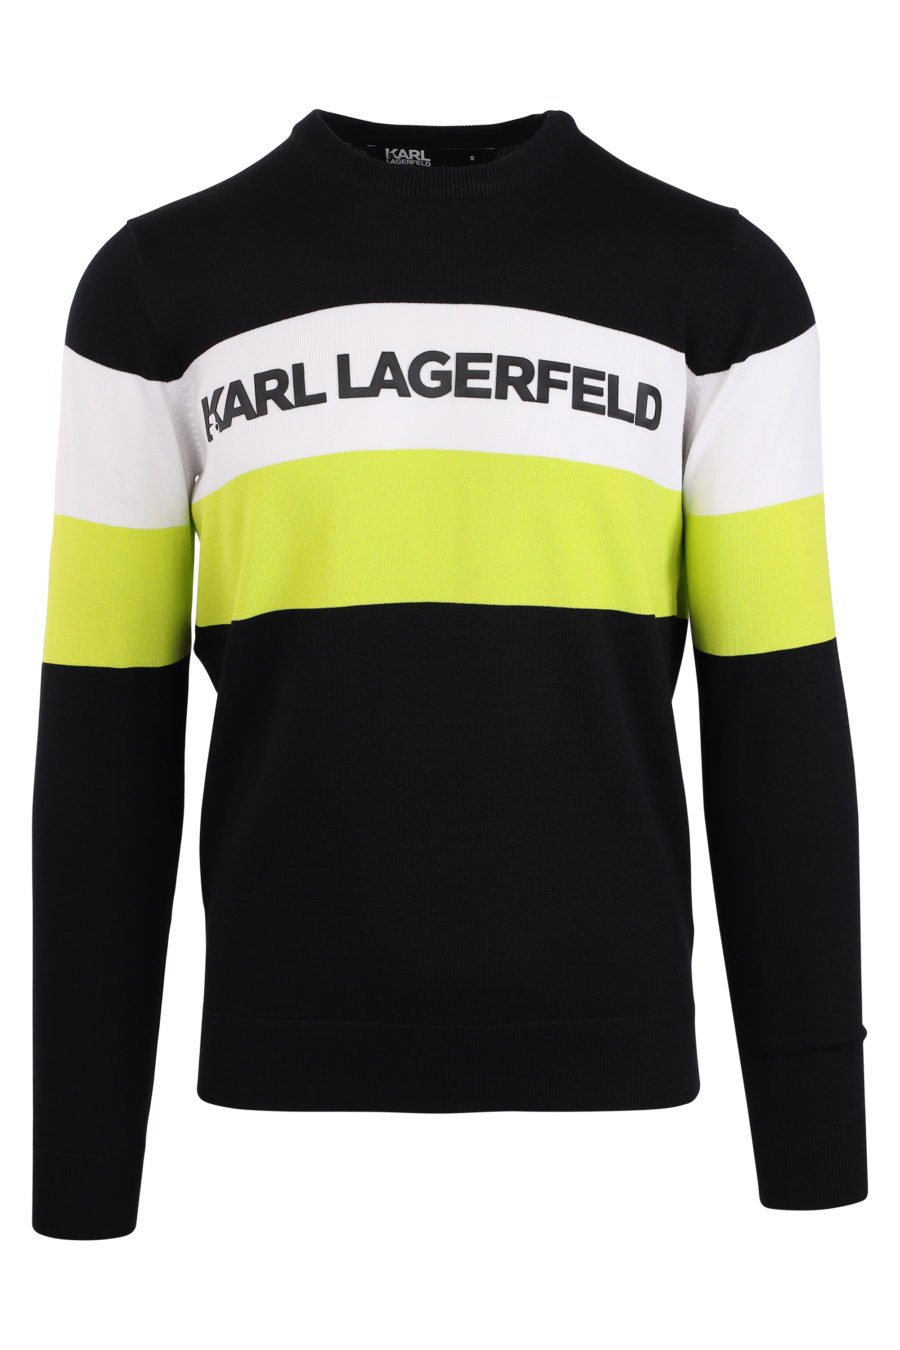 Black sweatshirt with white and yellow stripe - IMG 0921